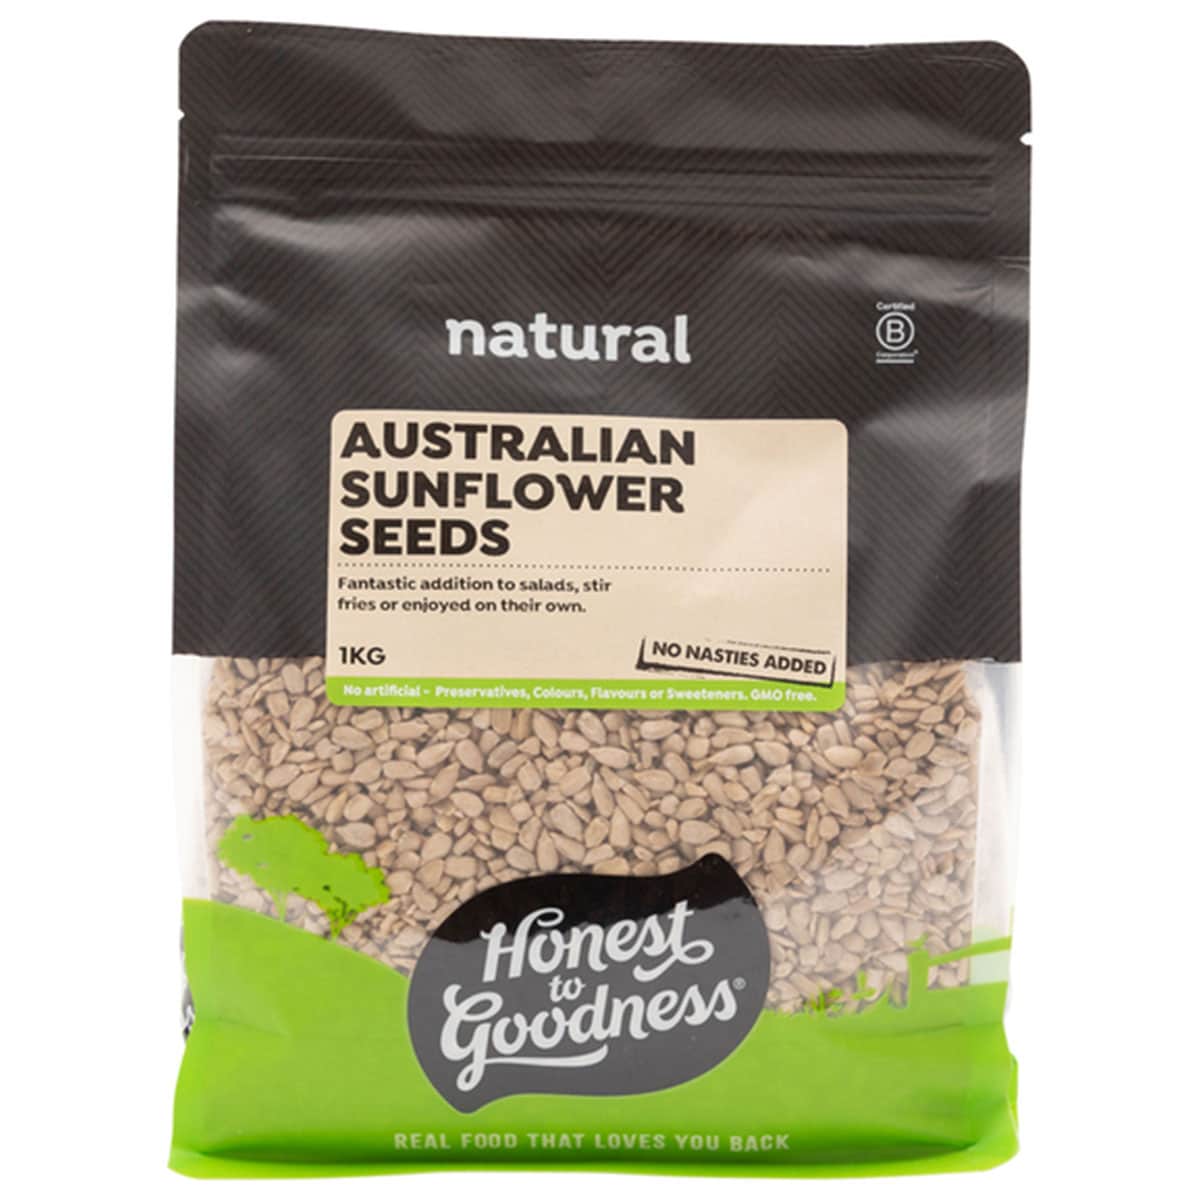 Honest to Goodness Australian Sunflower Seeds 1kg